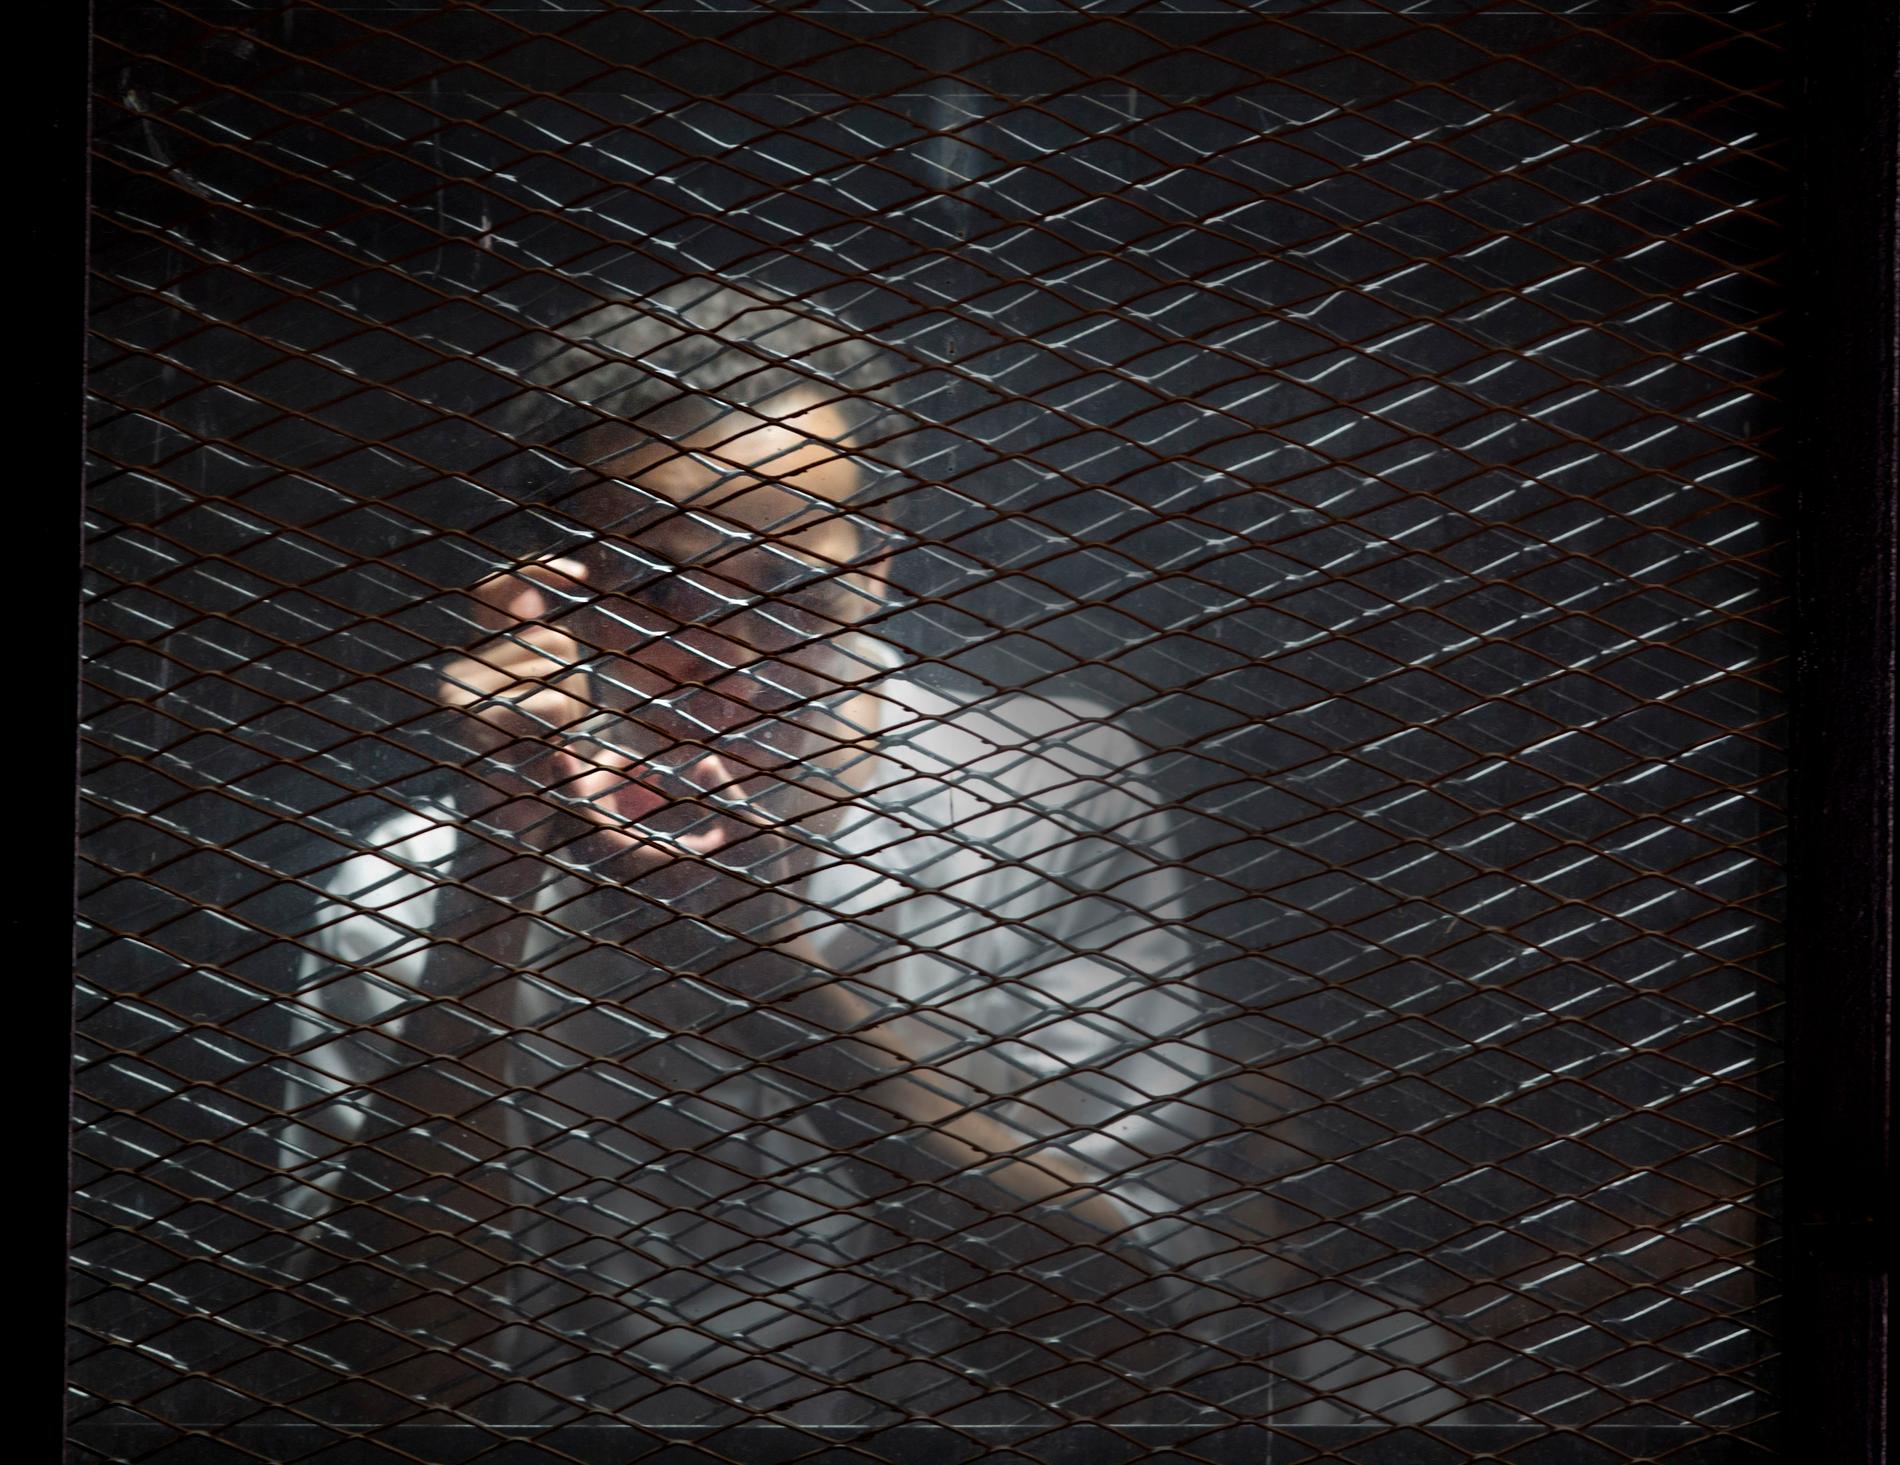 Journalisten Mahmoud Abu Zied, känd som Shawkan, dömdes i den egyptiska rättegång som nu får hård kritik av FN:s människorättschef.